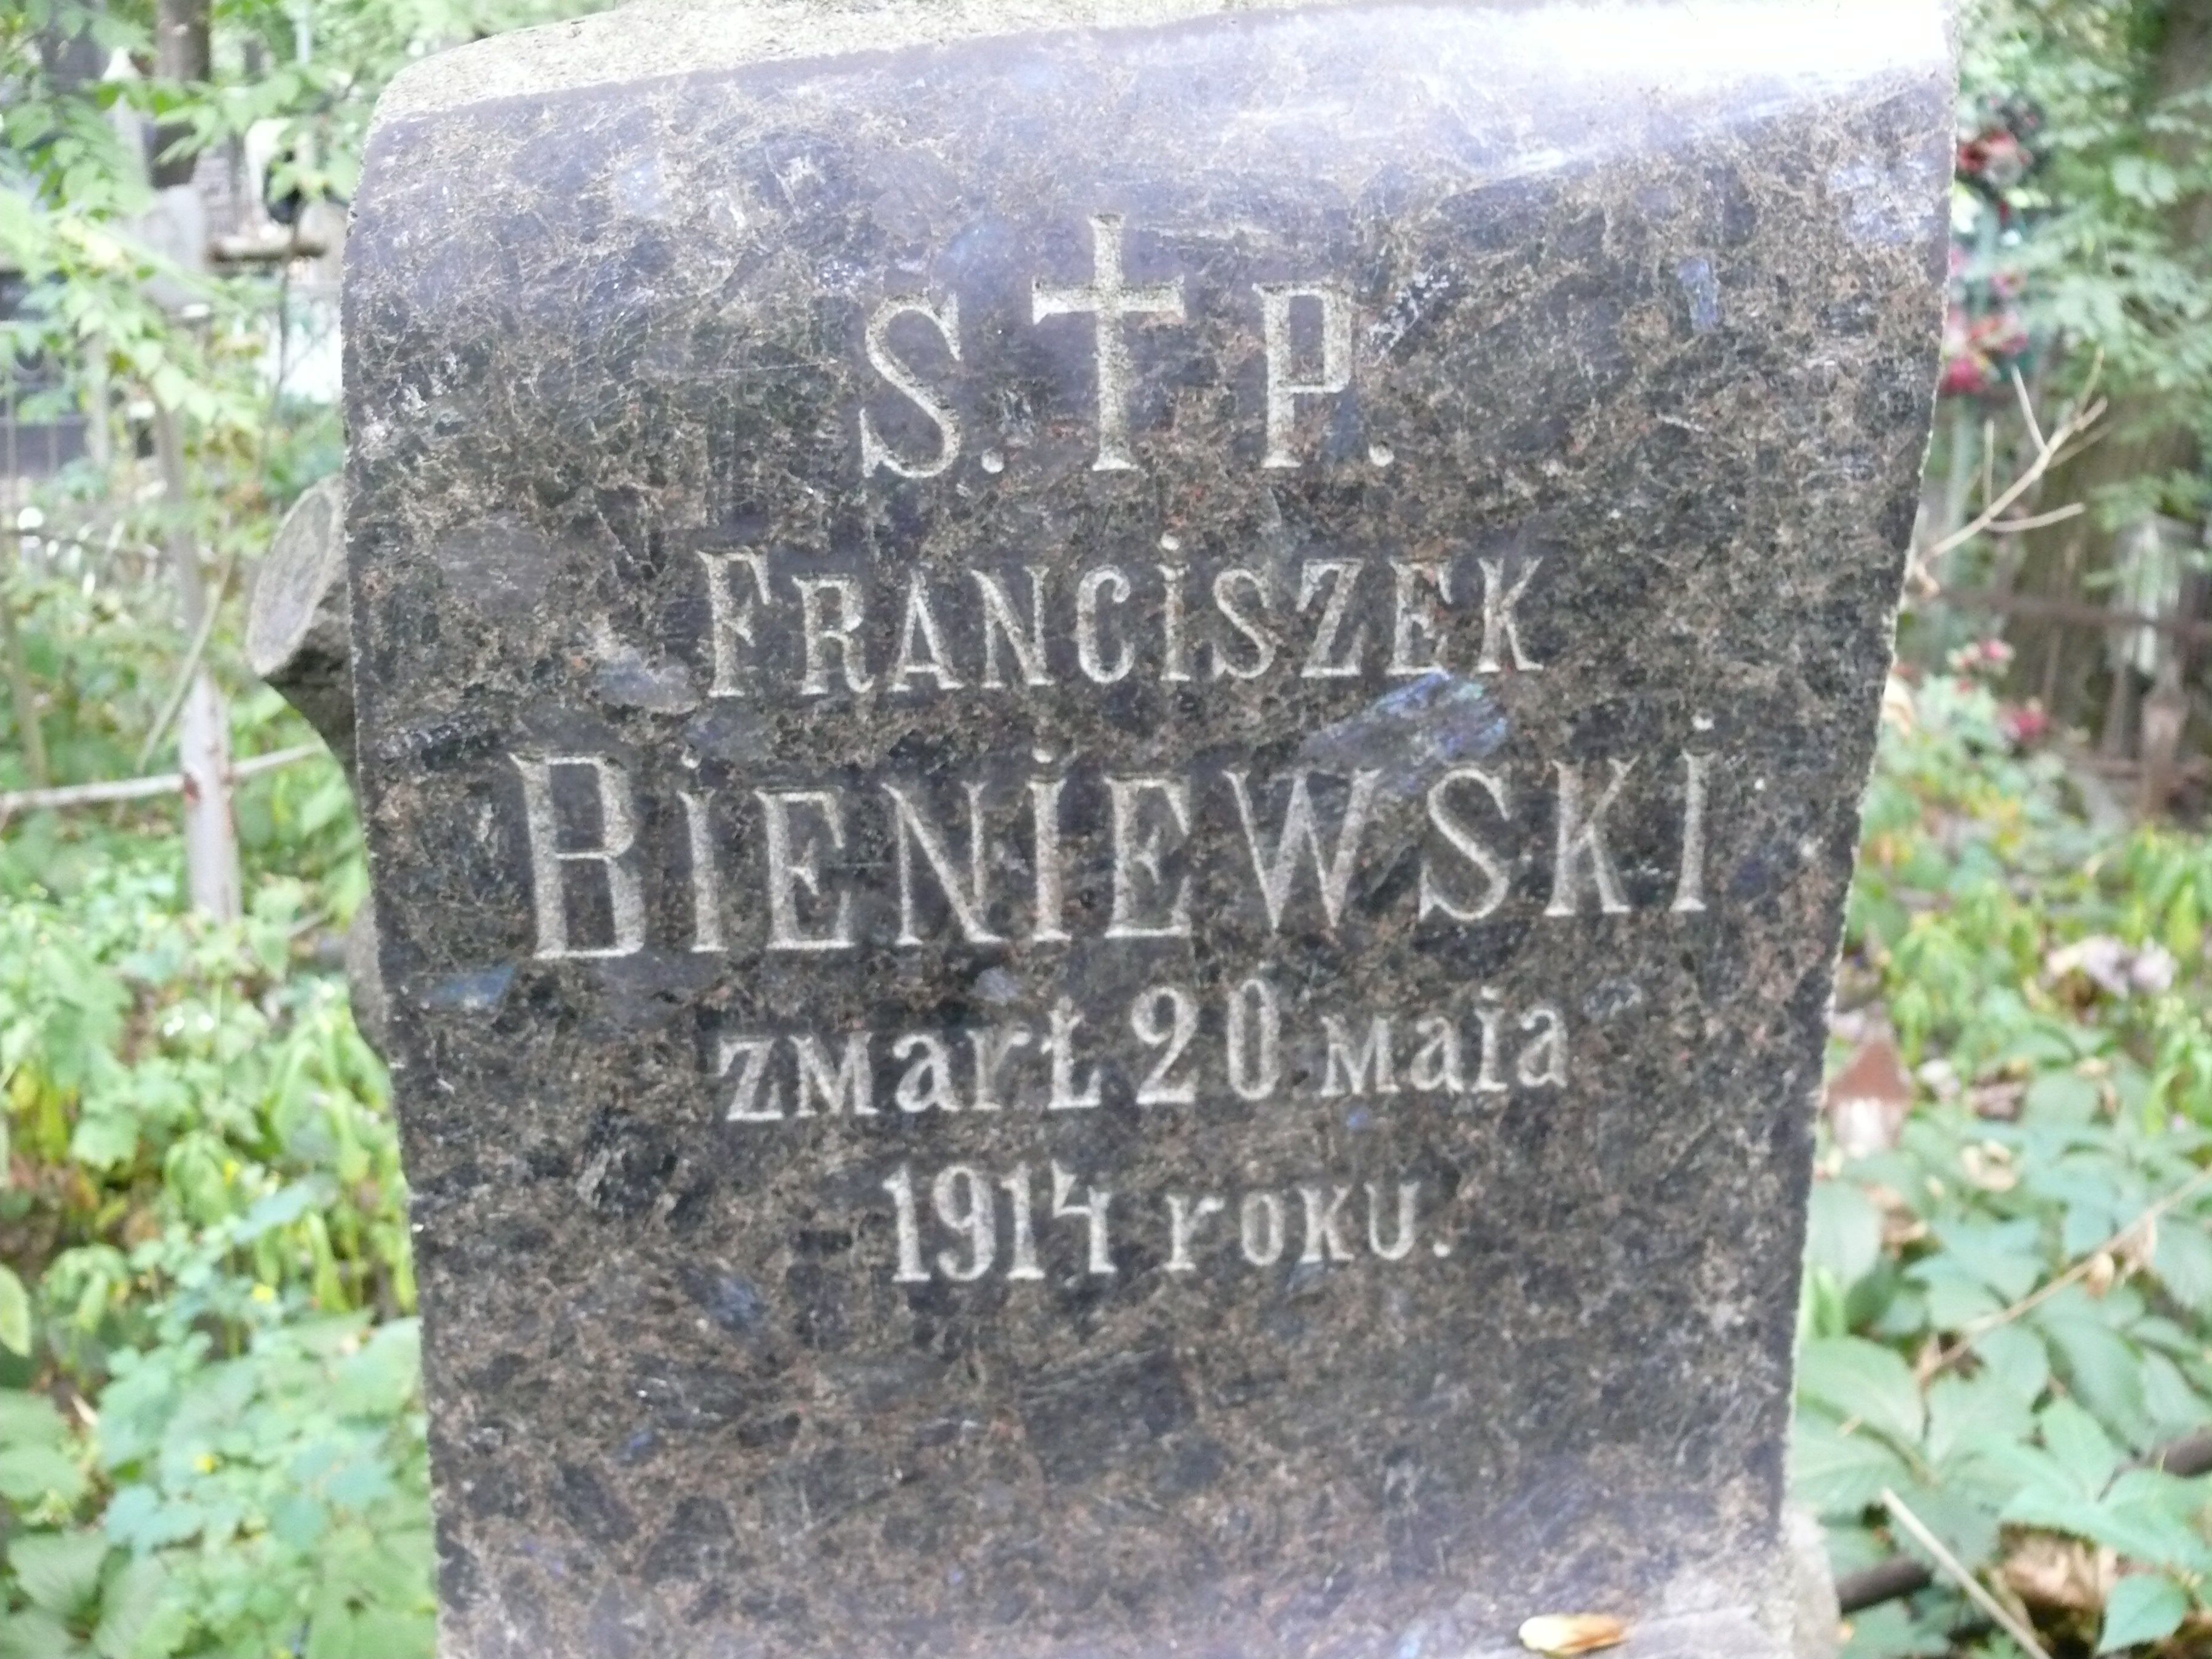 Inscription from the tombstone of Franciszek Bieniewski